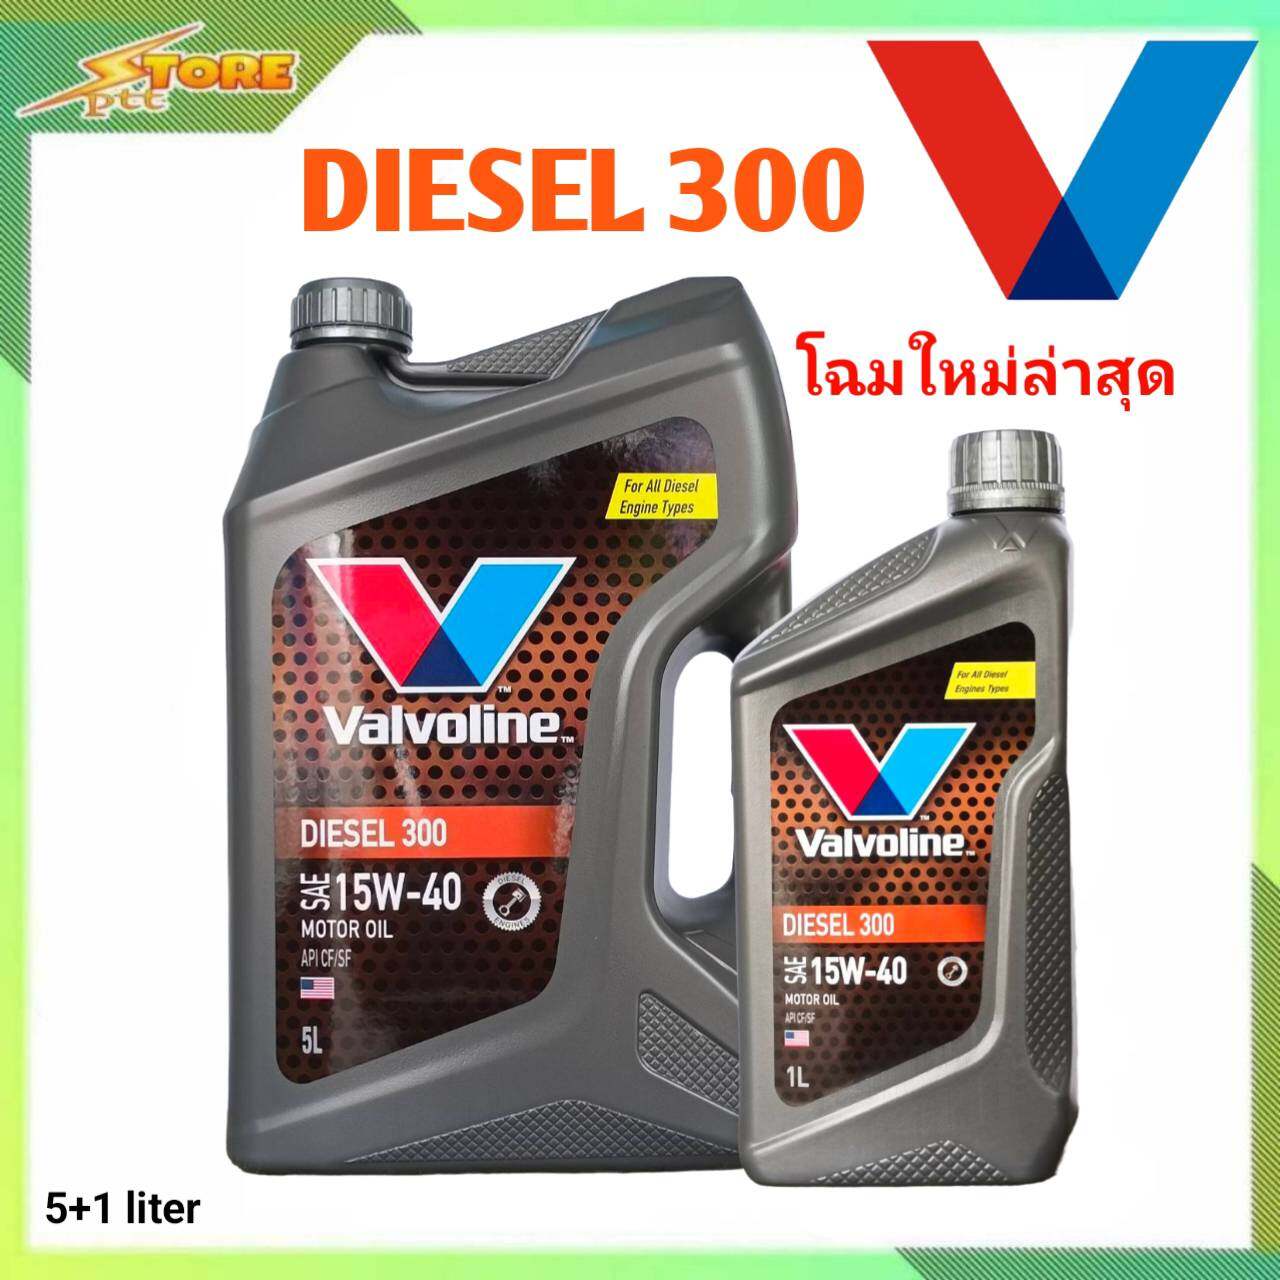 มุมมองเพิ่มเติมของสินค้า น้ำมันเครื่อง Valvoline Diesel 300 15W-40 ขนาด 5+1 ลิตร กึ่งสังเคราะห์ ( น้ำมันเครื่องวาโวลีน ดีเซล 300 15W-40 )